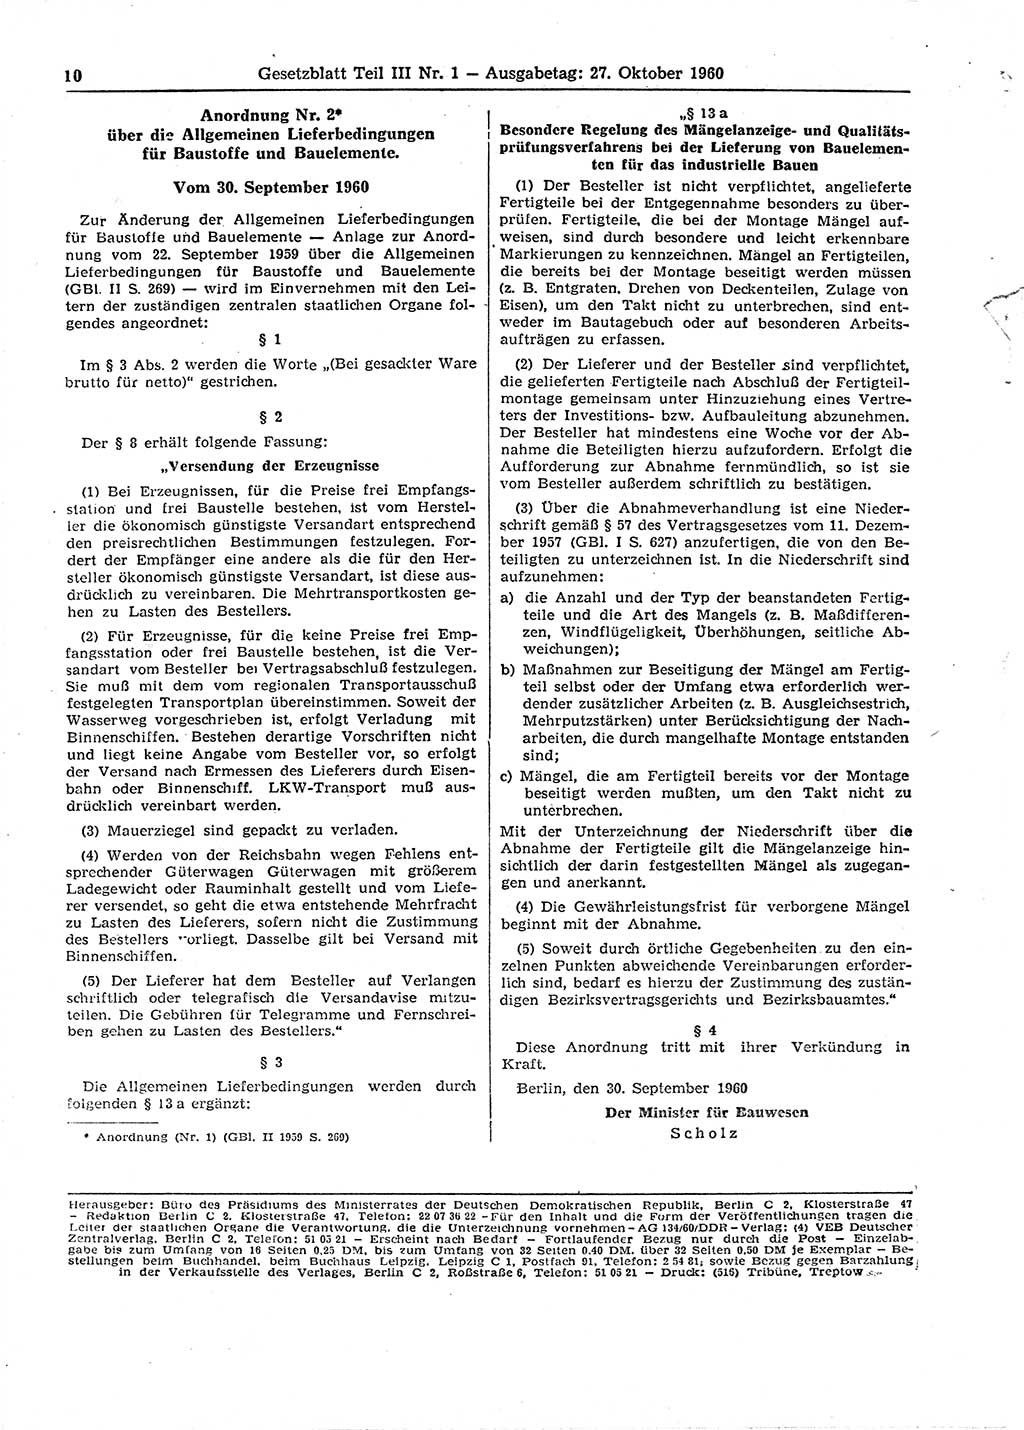 Gesetzblatt (GBl.) der Deutschen Demokratischen Republik (DDR) Teil ⅠⅠⅠ 1960, Seite 10 (GBl. DDR ⅠⅠⅠ 1960, S. 10)